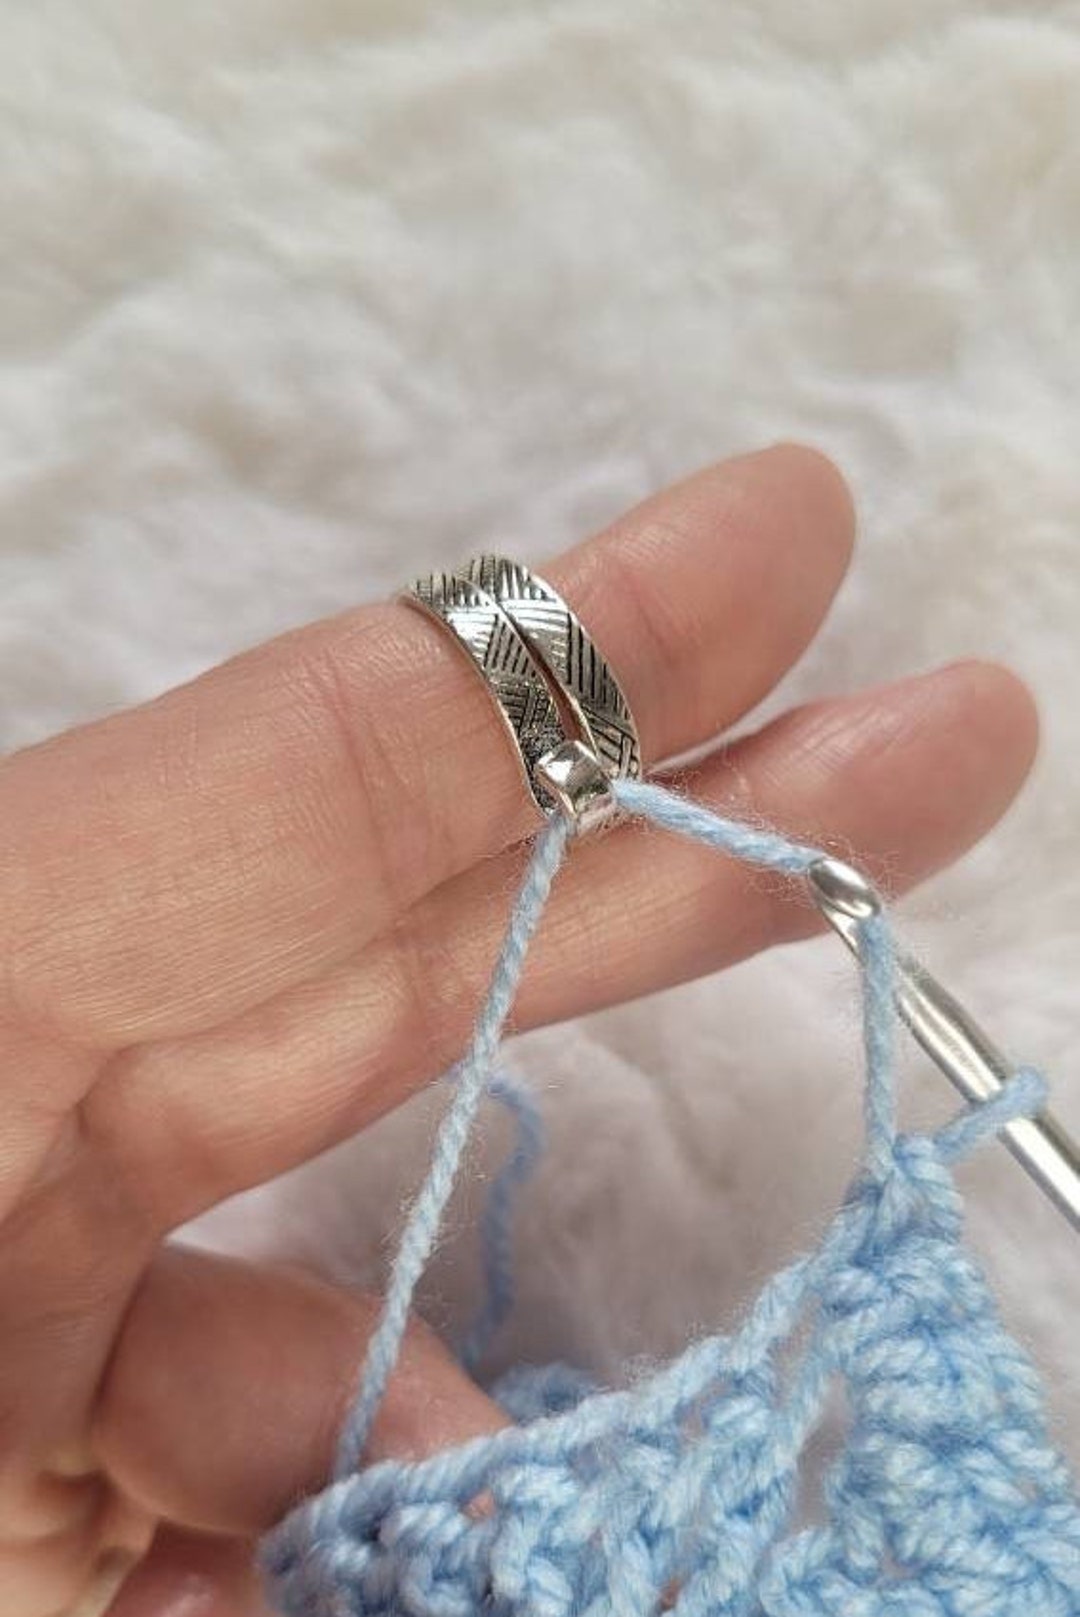  10 PCS Crochet Ring - Yarn Tension Rings for Finger